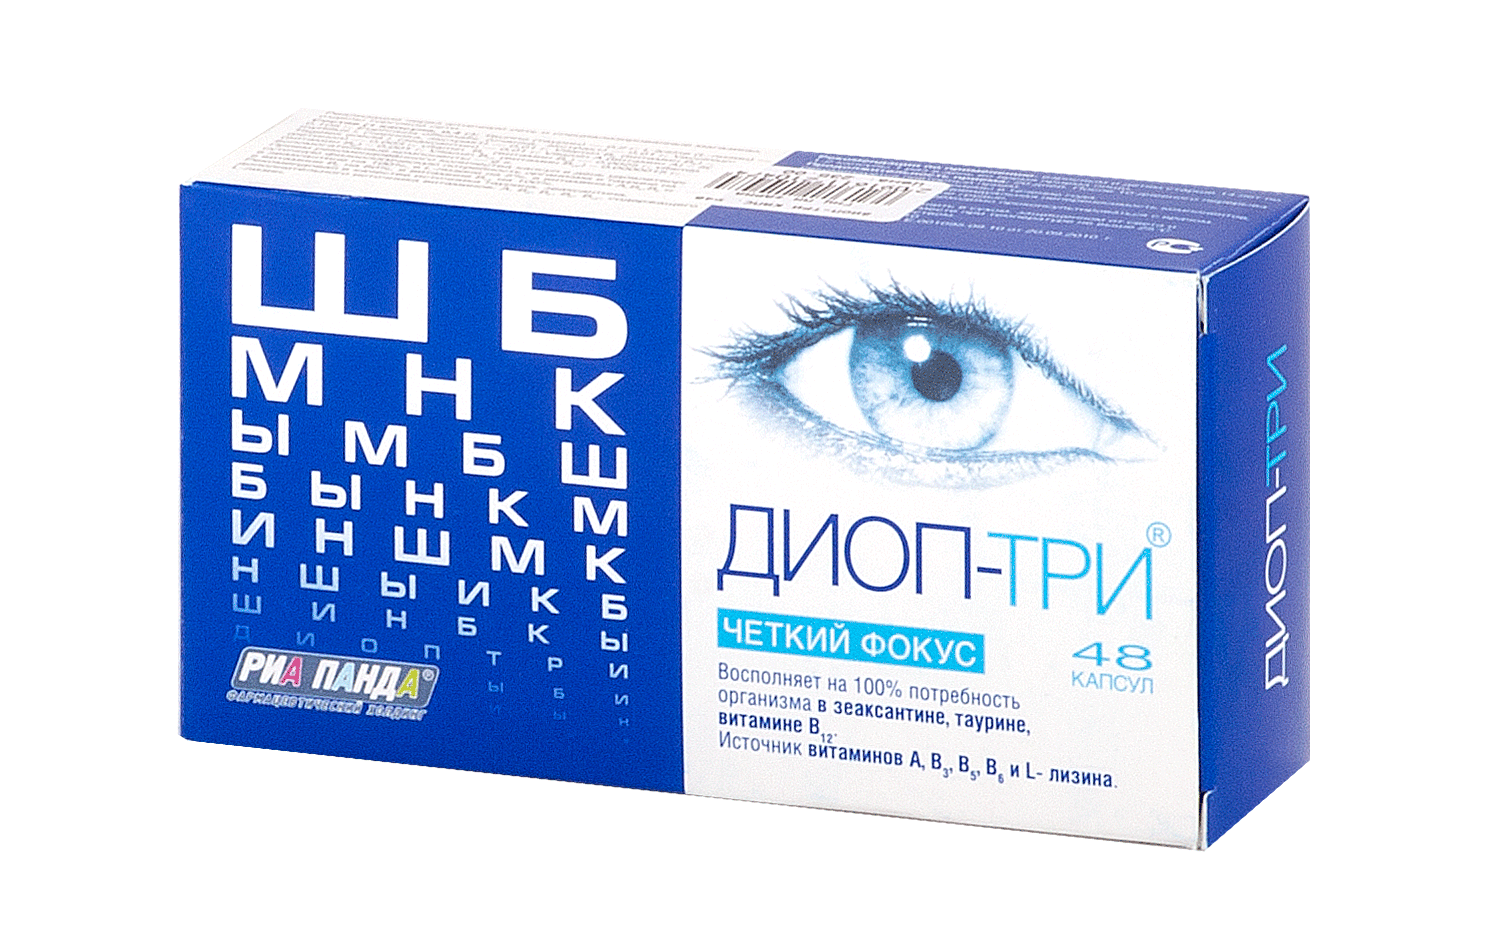 Эффективные капли для улучшения зрения при близорукости: список препаратов oculistic.ru
эффективные капли для улучшения зрения при близорукости: список препаратов